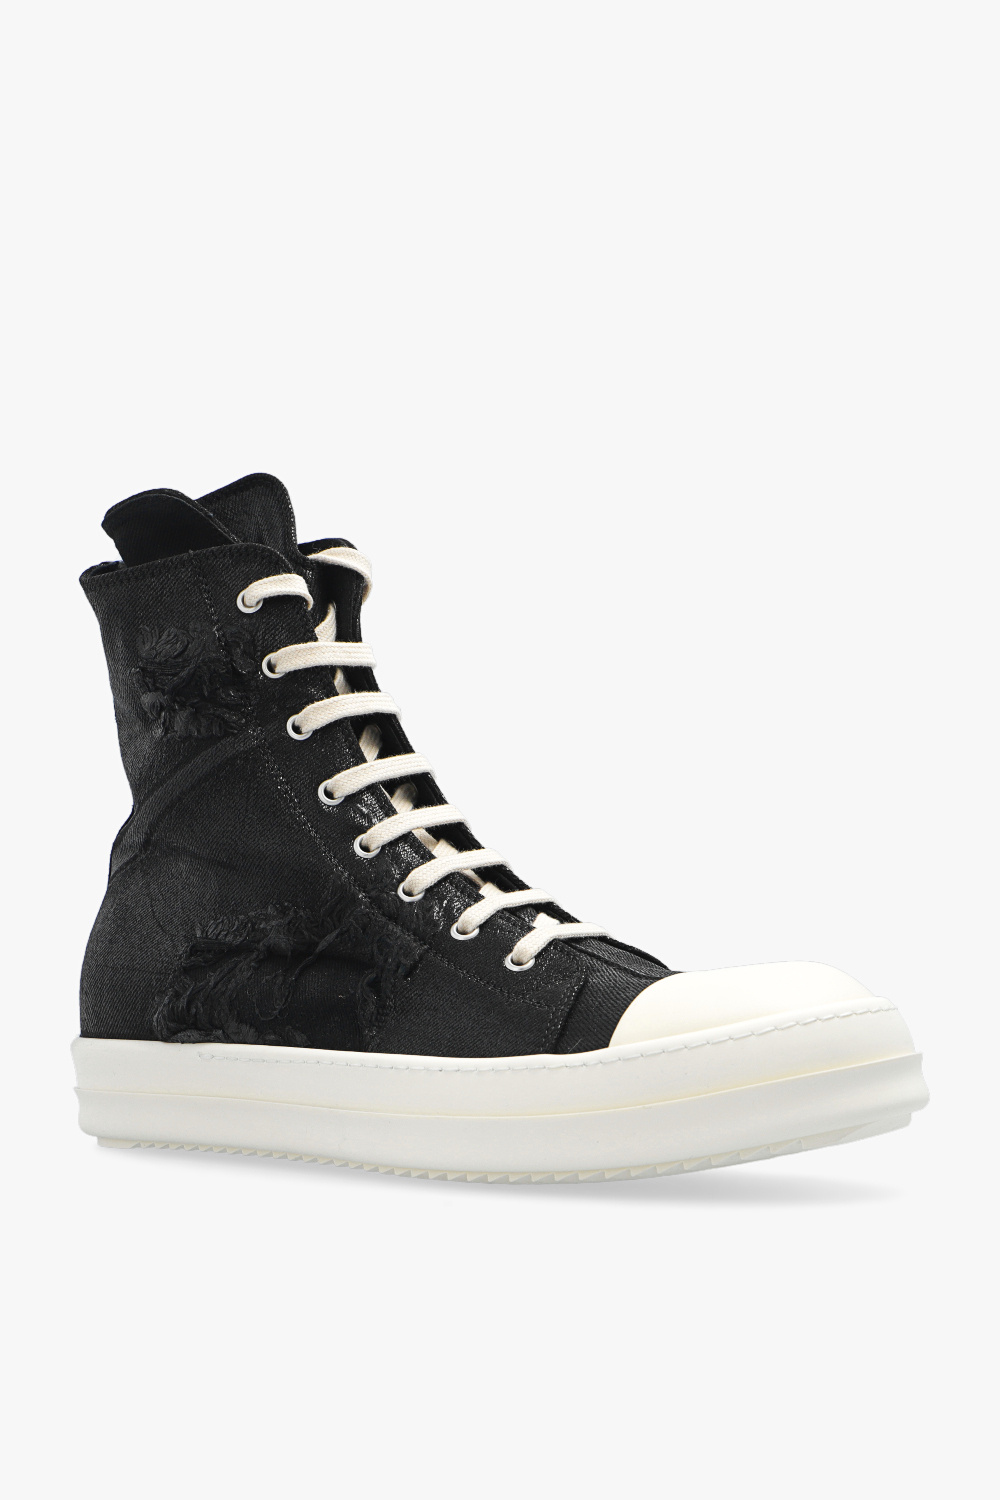 Leather 'Tabi' split toe shoes ‘Sneaks’ sneakers